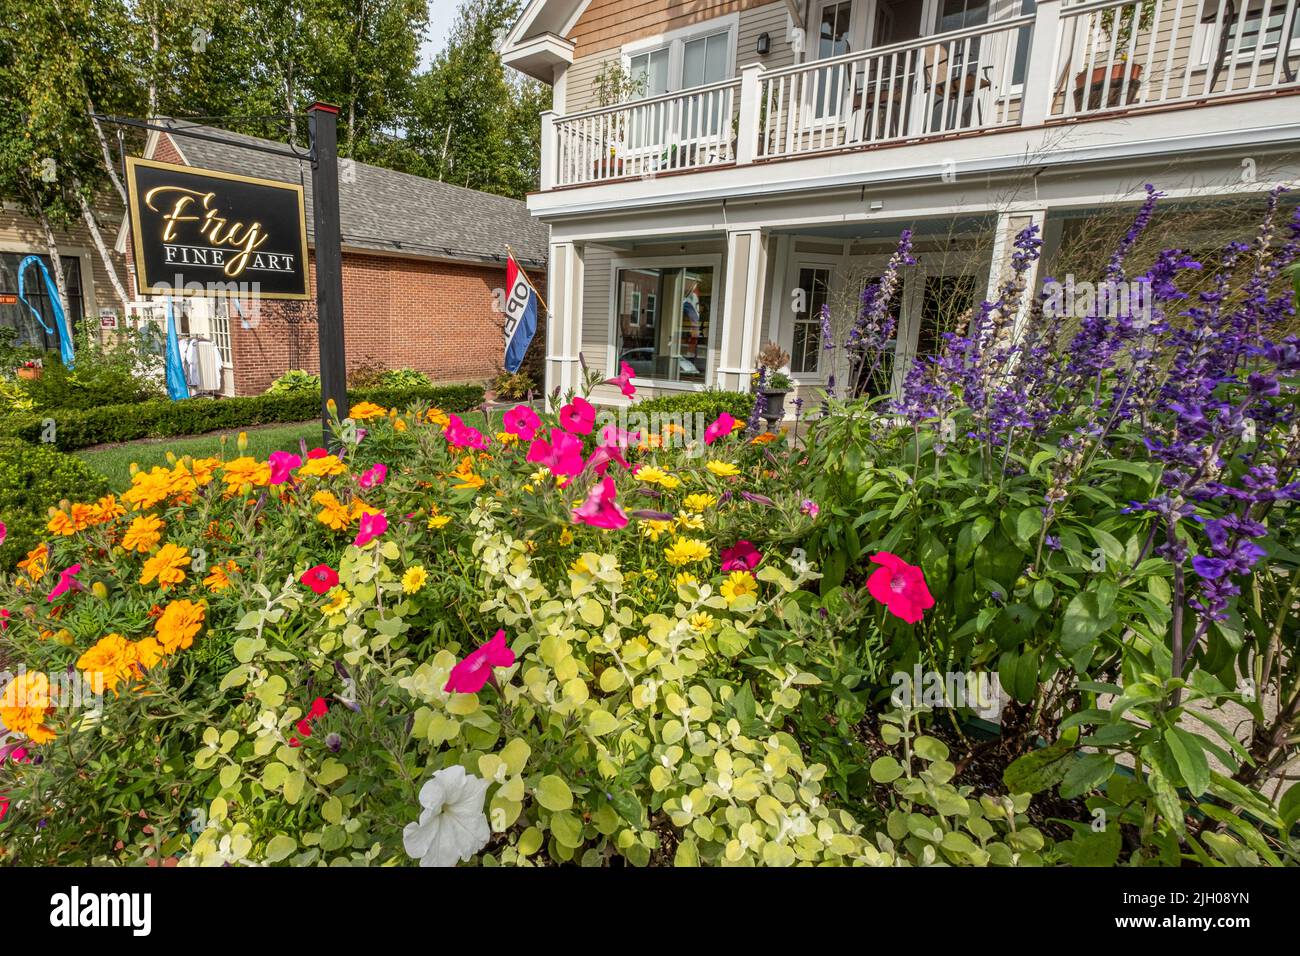 Flores adornan la fachada de Fry Fine Art business en Peterborough, New Hampshire Foto de stock